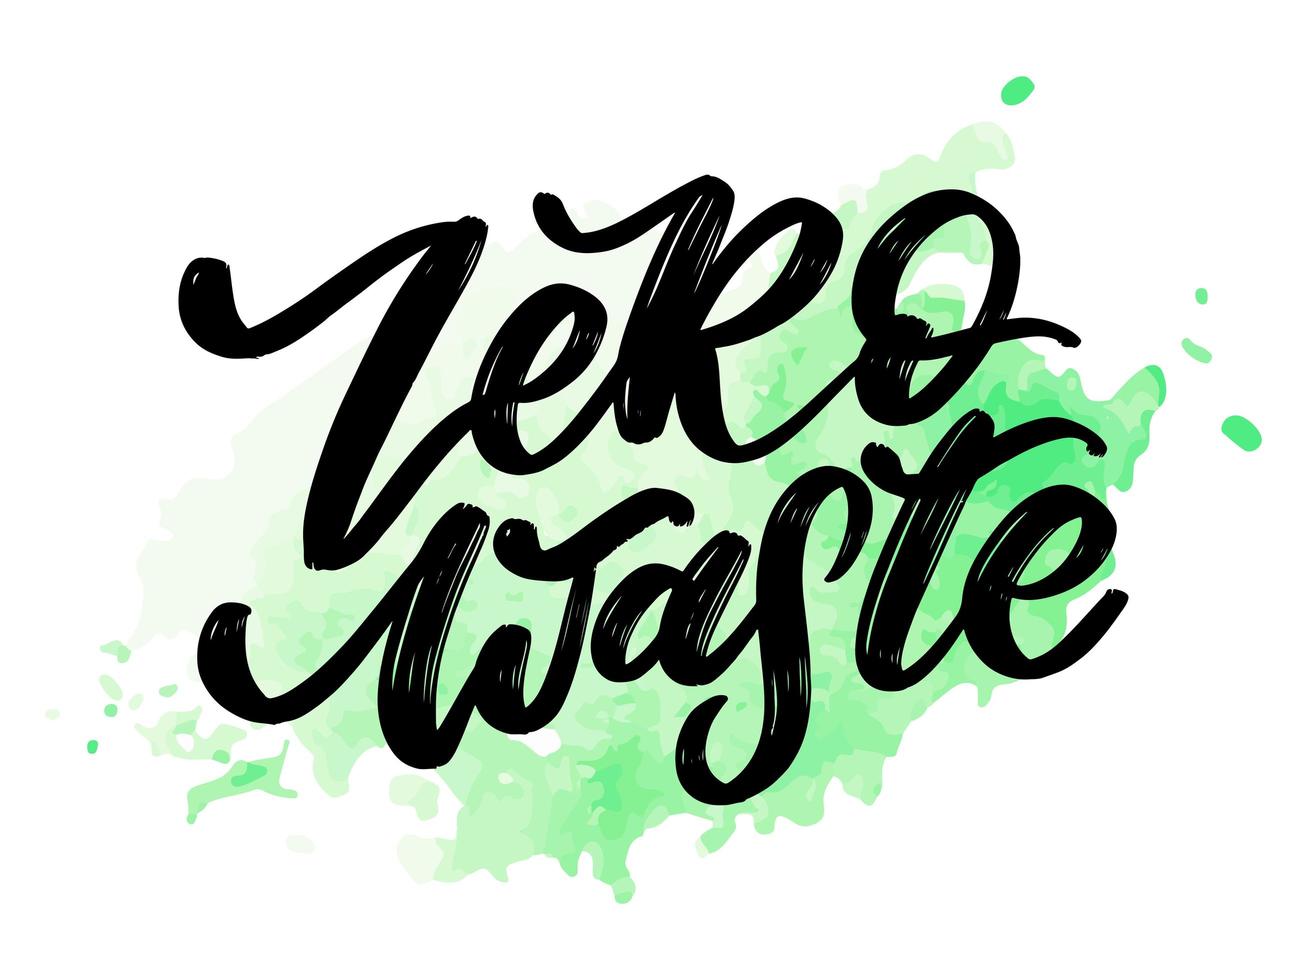 Konzept Zero Waste handschriftlicher Text Titelschild. Vektor-Illustration. vektor